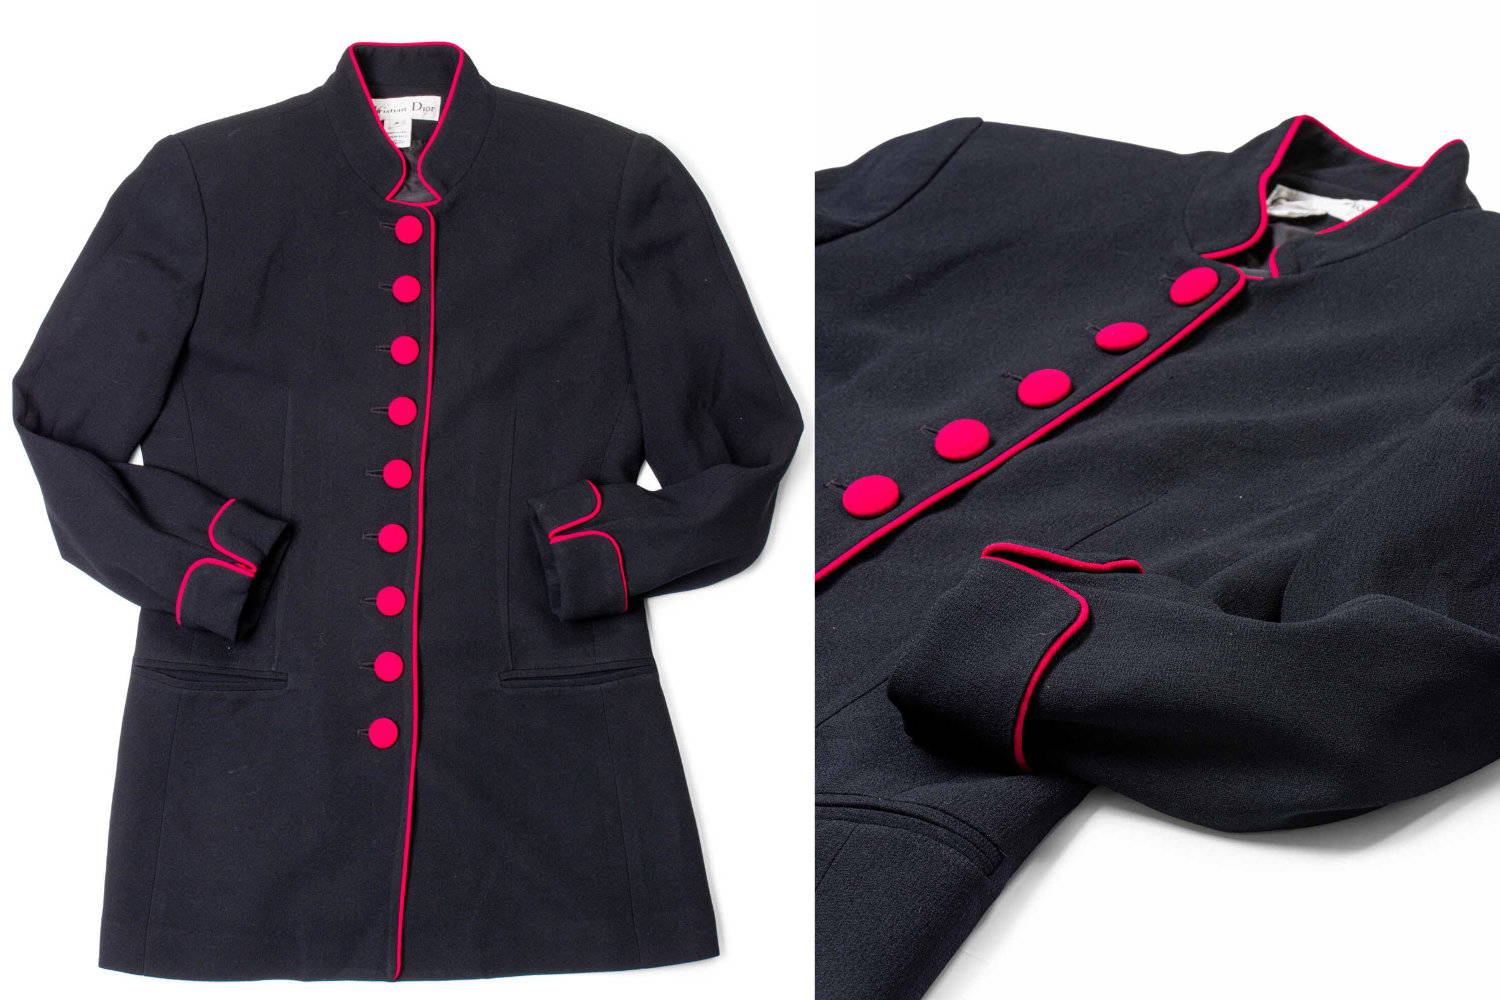 Vintage Christian Dior jacket